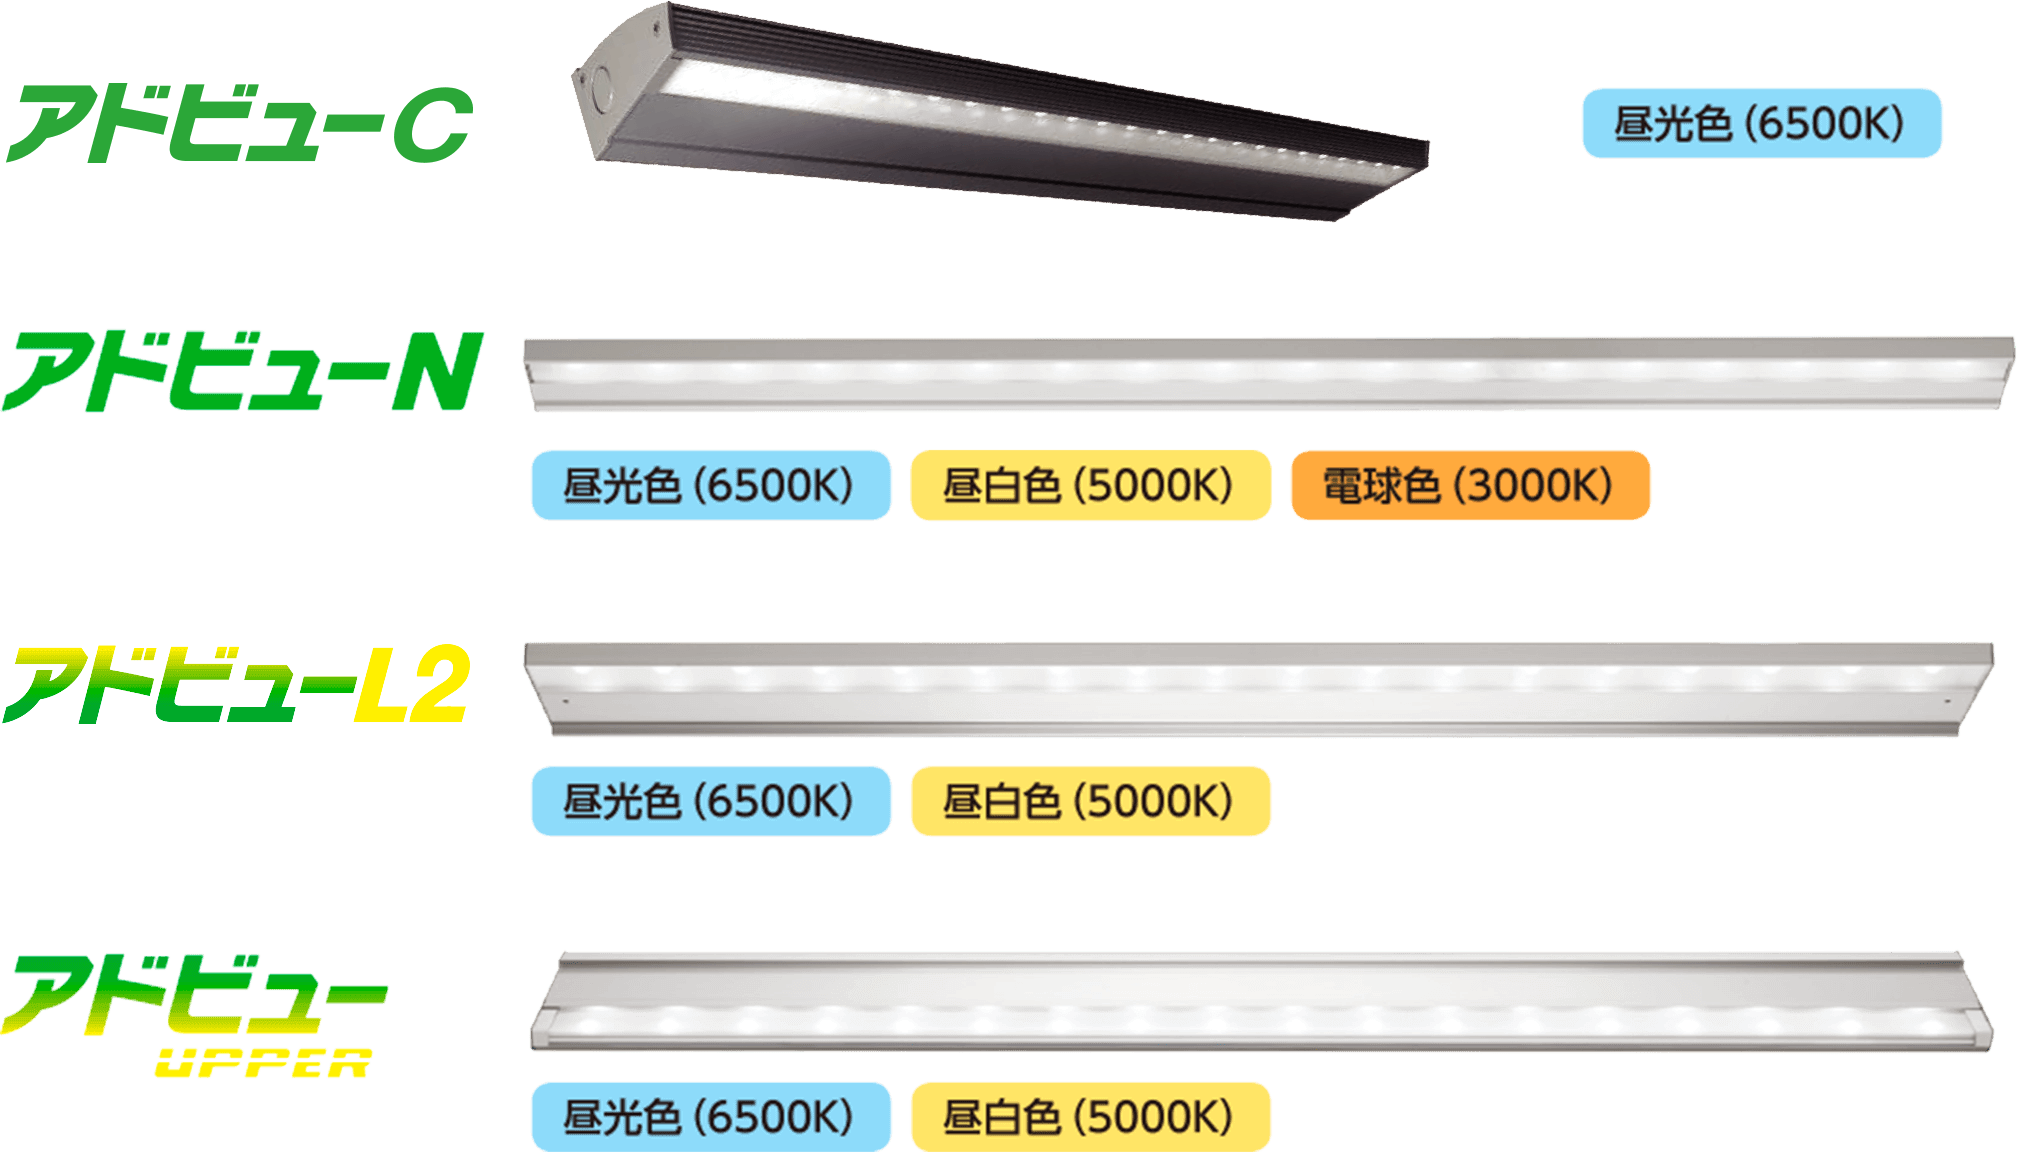 タテヤマ 昼白色(5000K) 5104485 サイン照明 看板照明 led照明 LED投光器 LEDライト